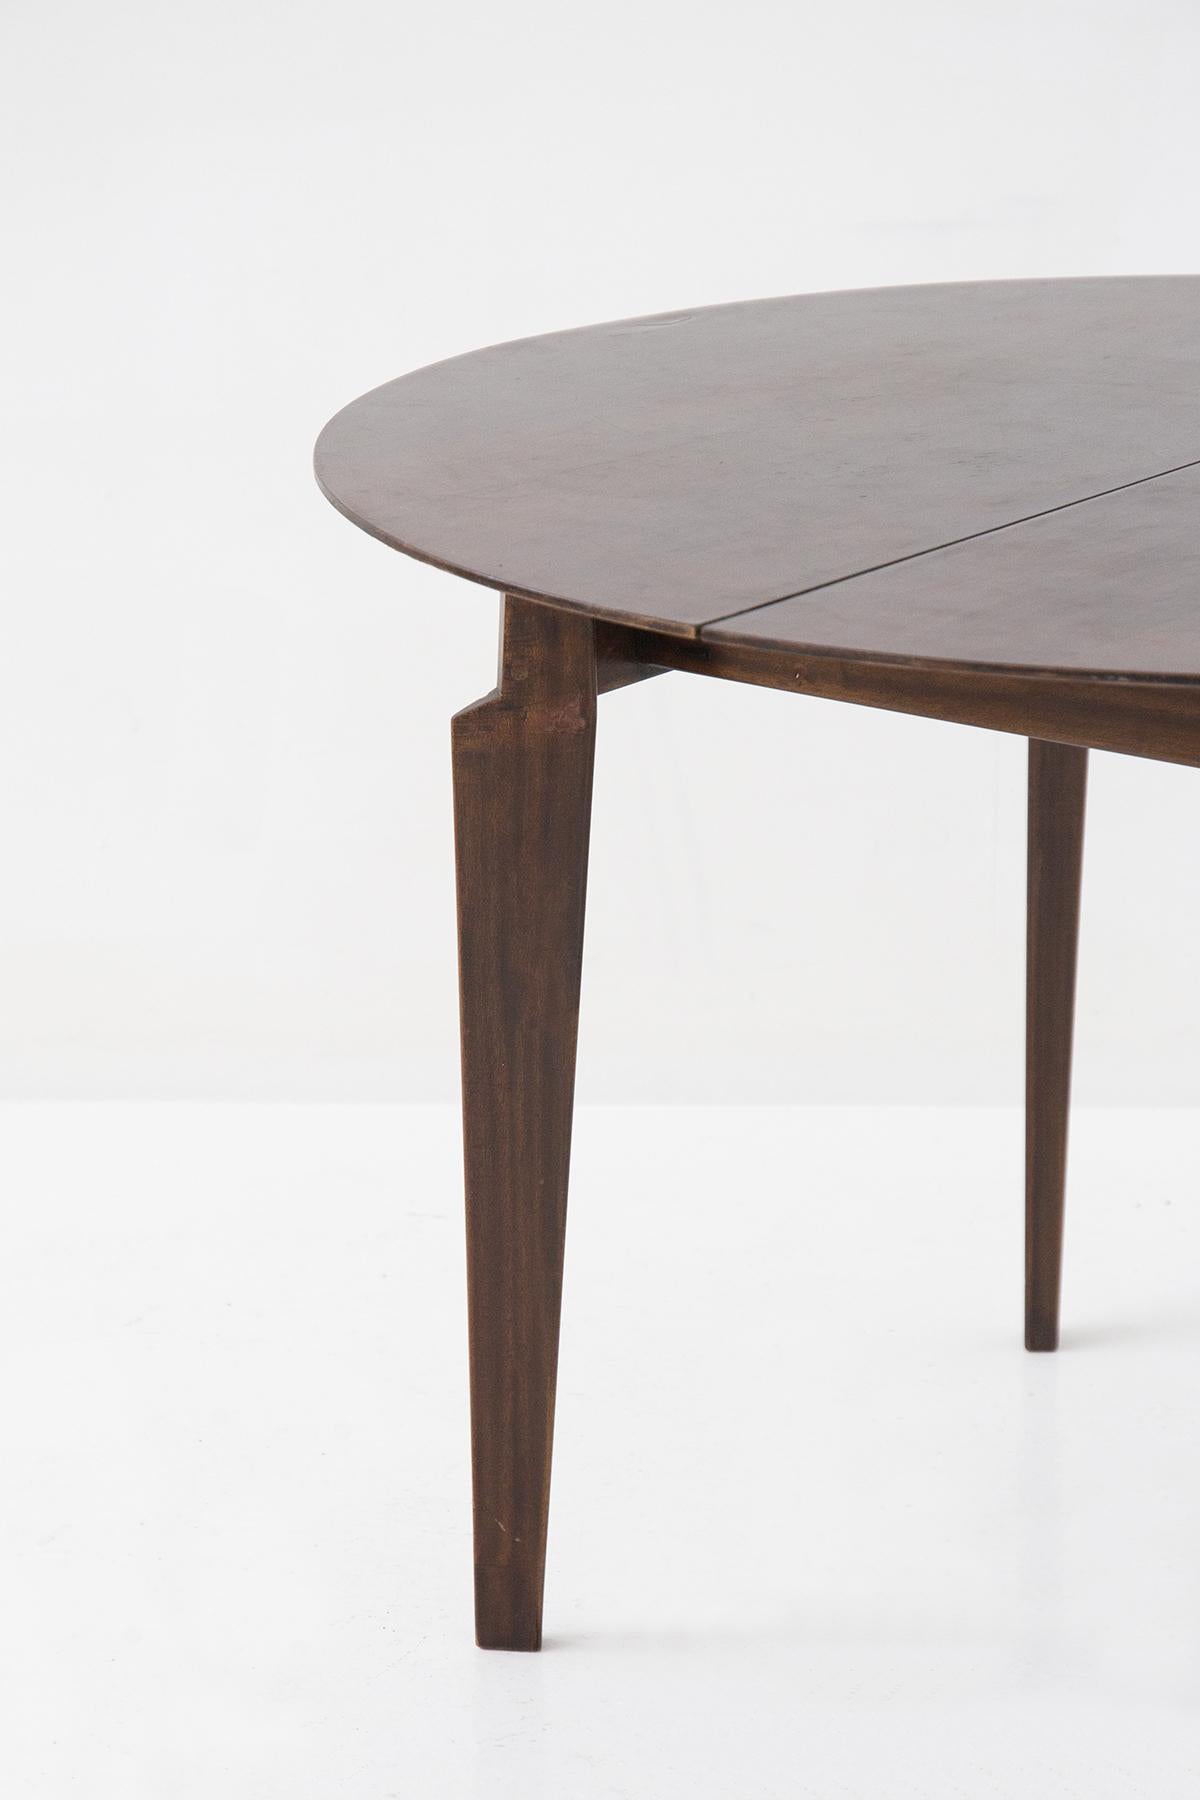 Belle table ronde des années 1950 de fabrication italienne Dassi, conçue par Edmundo Palutari.
La table est entièrement réalisée dans un bois brun très foncé, très élégant. Il y a 4 pieds de support de forme triangulaire, très distinctifs et